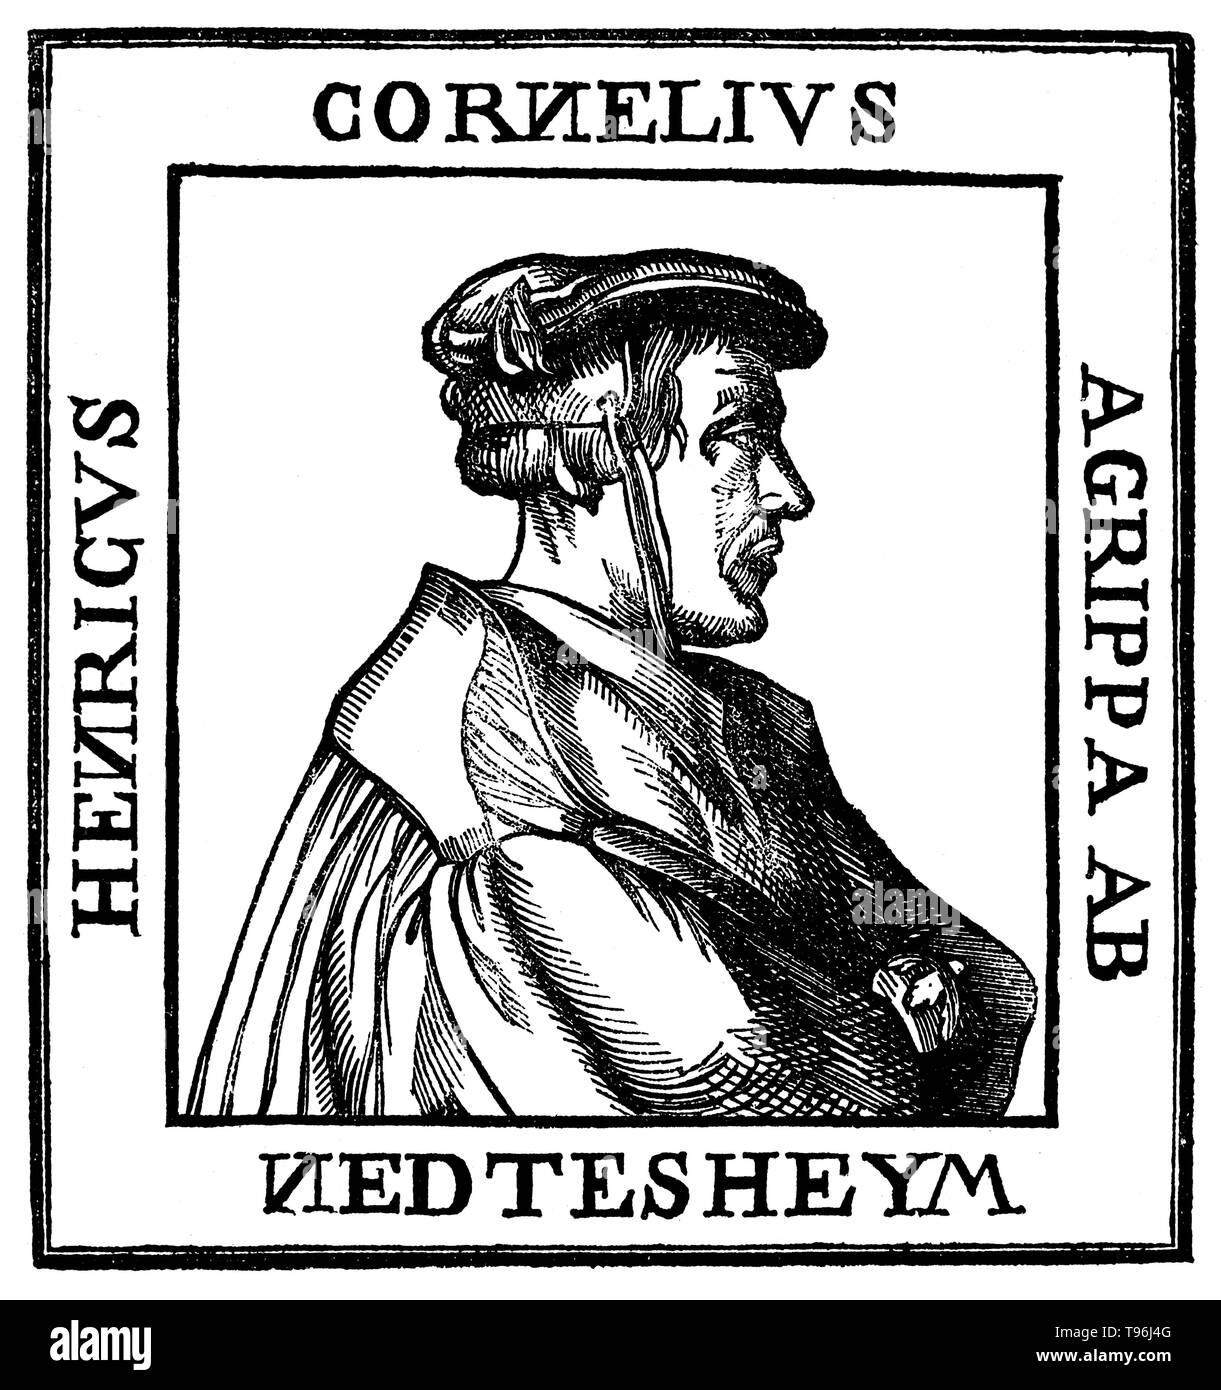 Heinrich Cornelius Agrippa von Nettesheim (Septembre 14, 1486 - février 18, 1535) était un écrivain allemand magicien, occultisme, théologien, astrologue et alchimiste. En 1510, il a étudié brièvement avec Johannes Trithemius, Agrippa et lui a envoyé une première ébauche de son chef-d'oeuvre, De occulta philosophia libri tres ; une étude de l'elemental, céleste, et de la magie. Banque D'Images